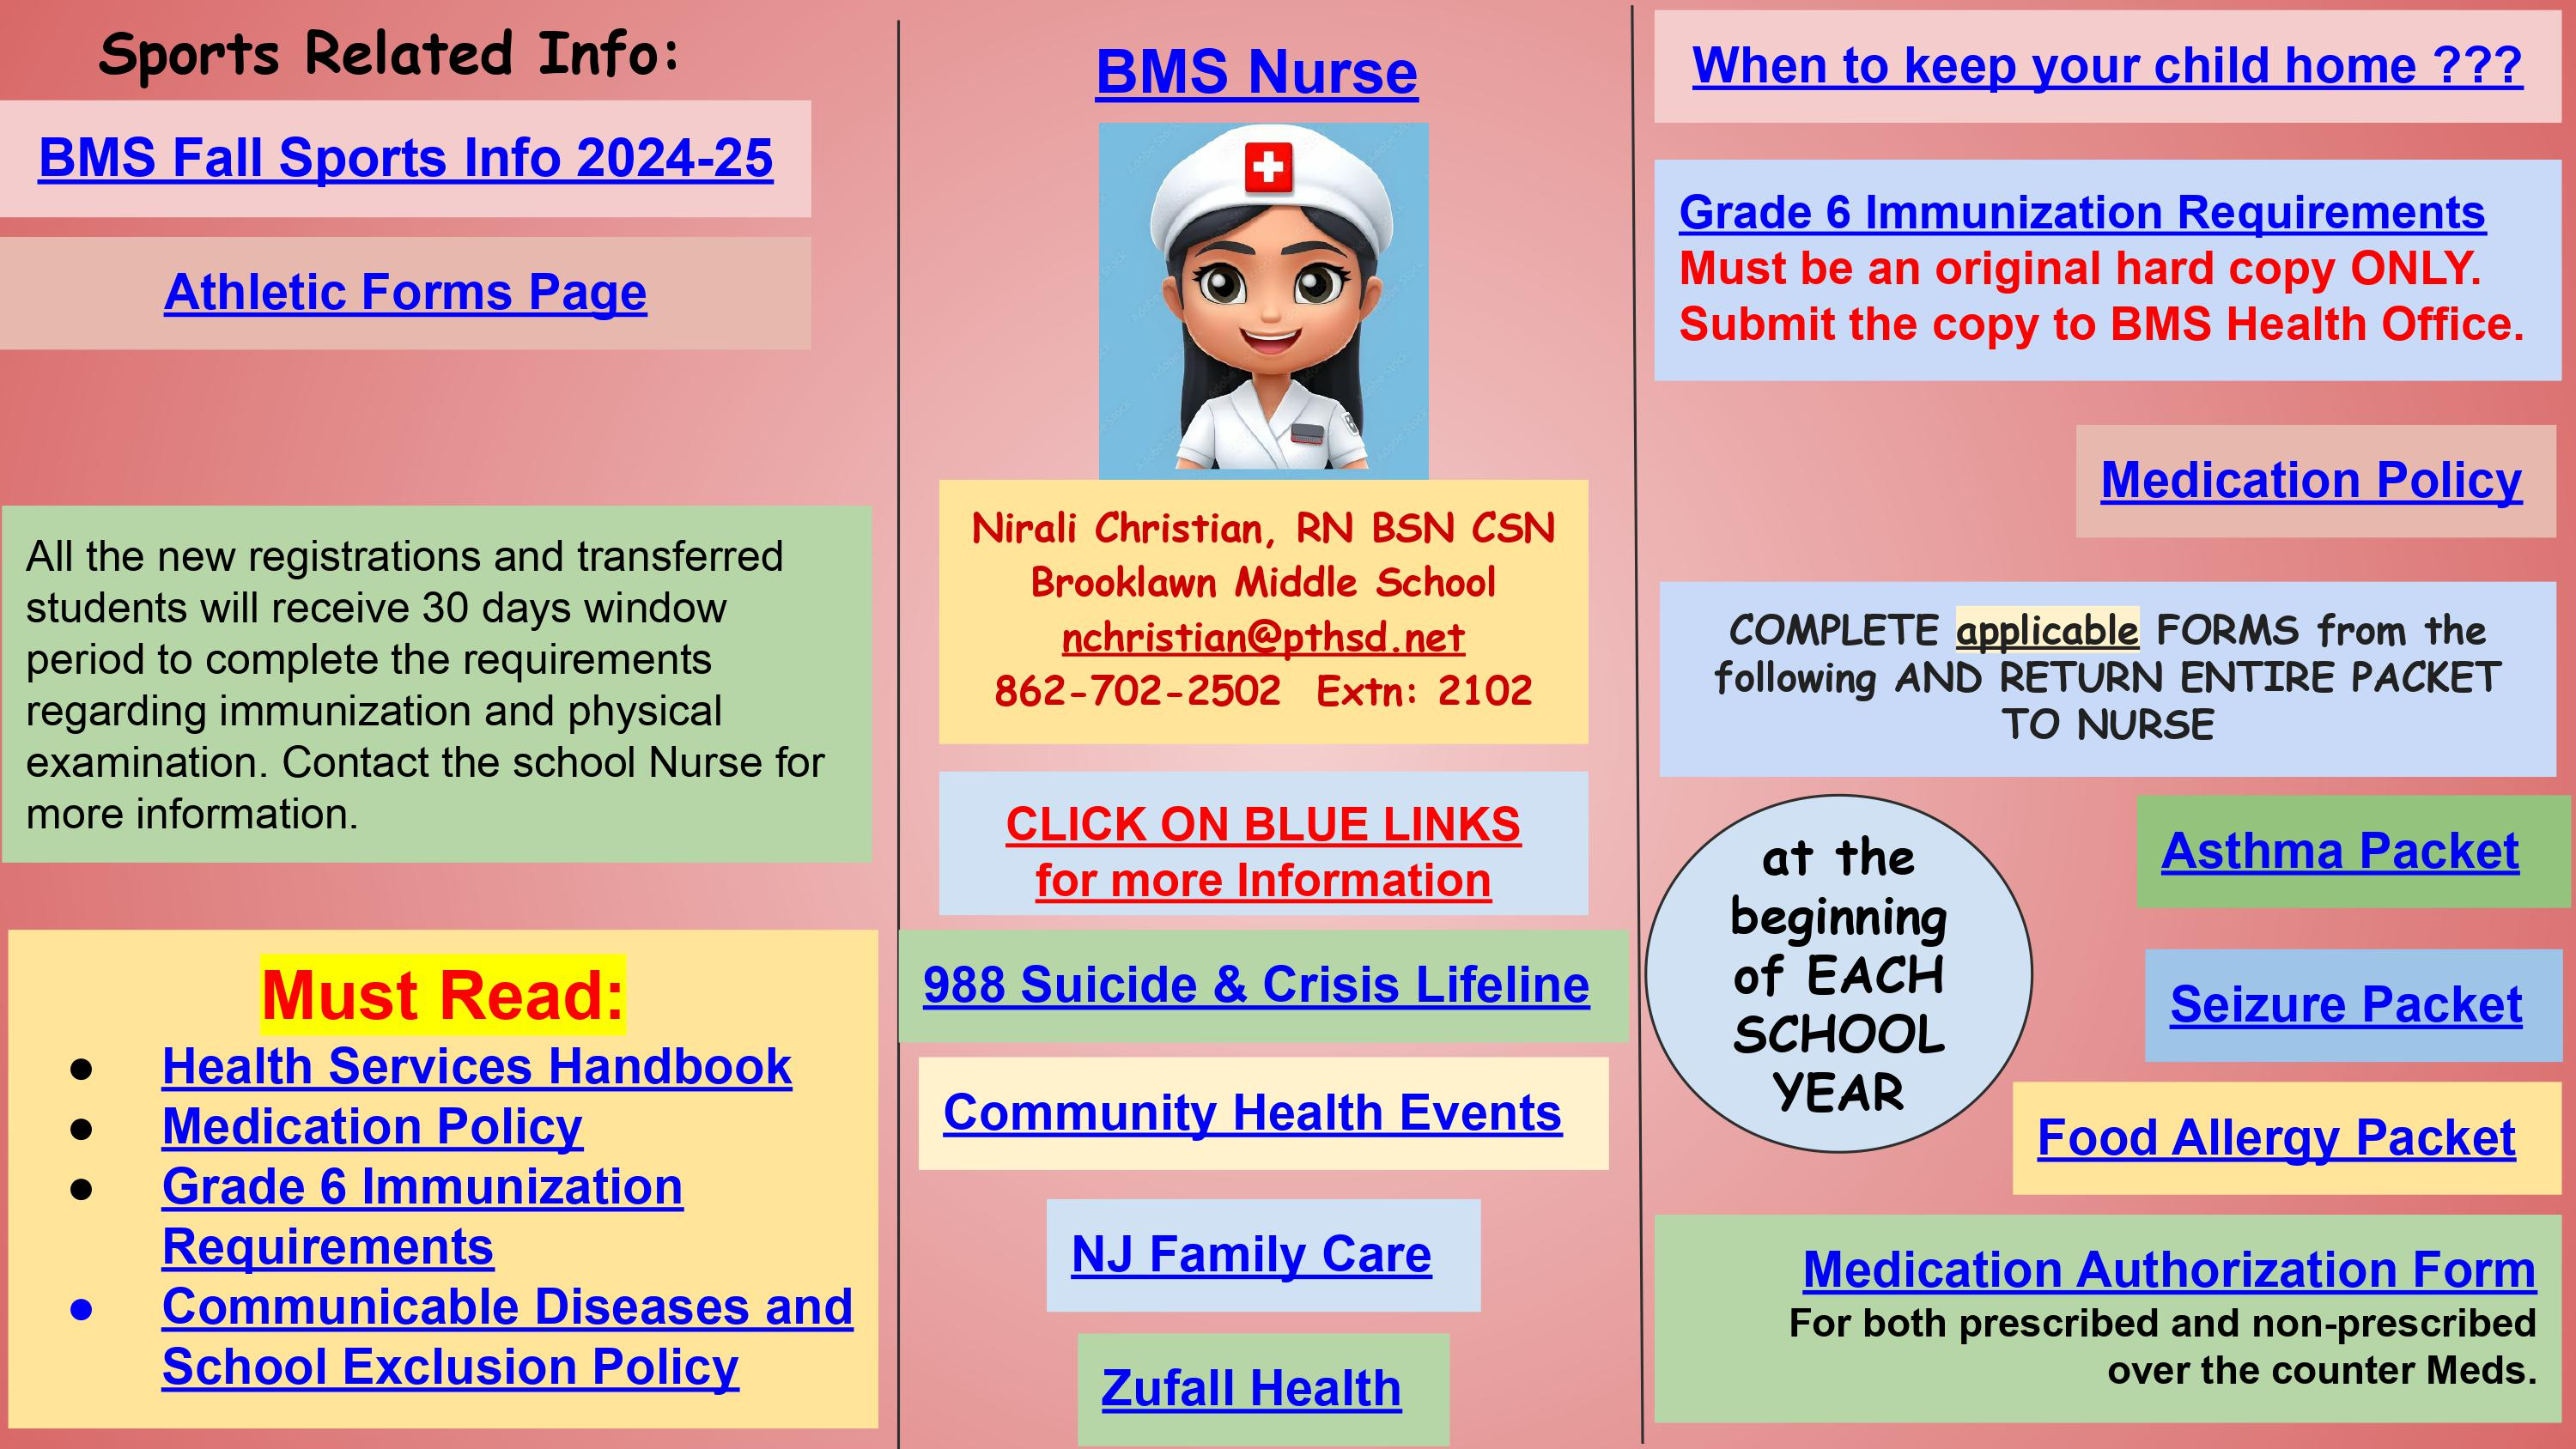 Nurse Page with links